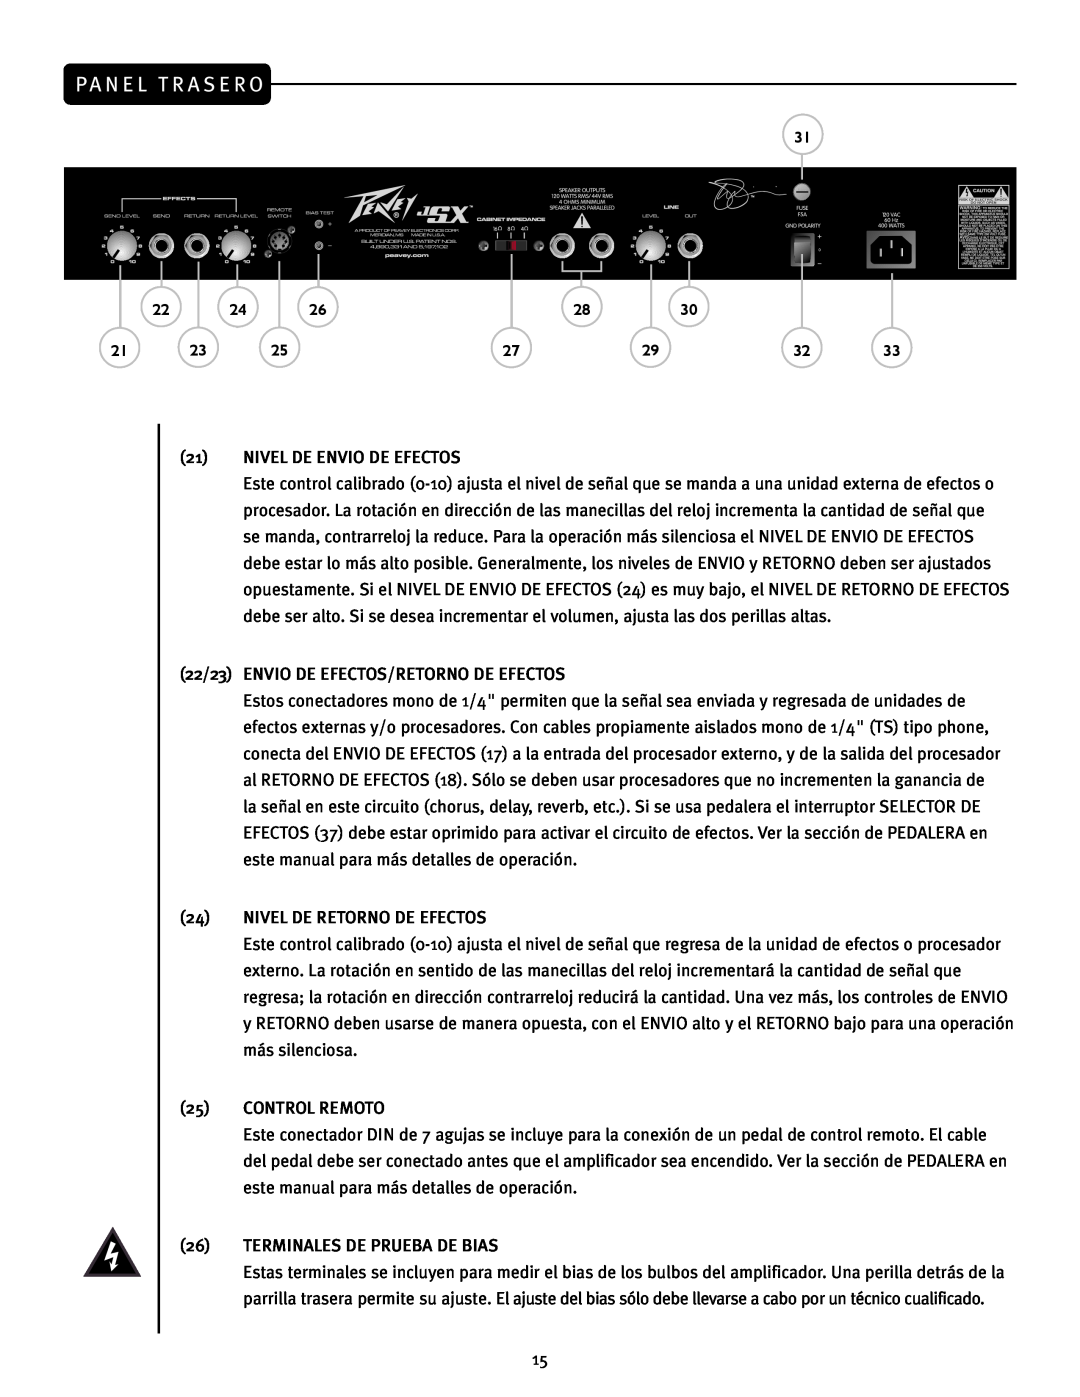 Peavey JSX Joe Satriani Signature All-Tube Amplifier manual Pa N E L T R A S E R O 